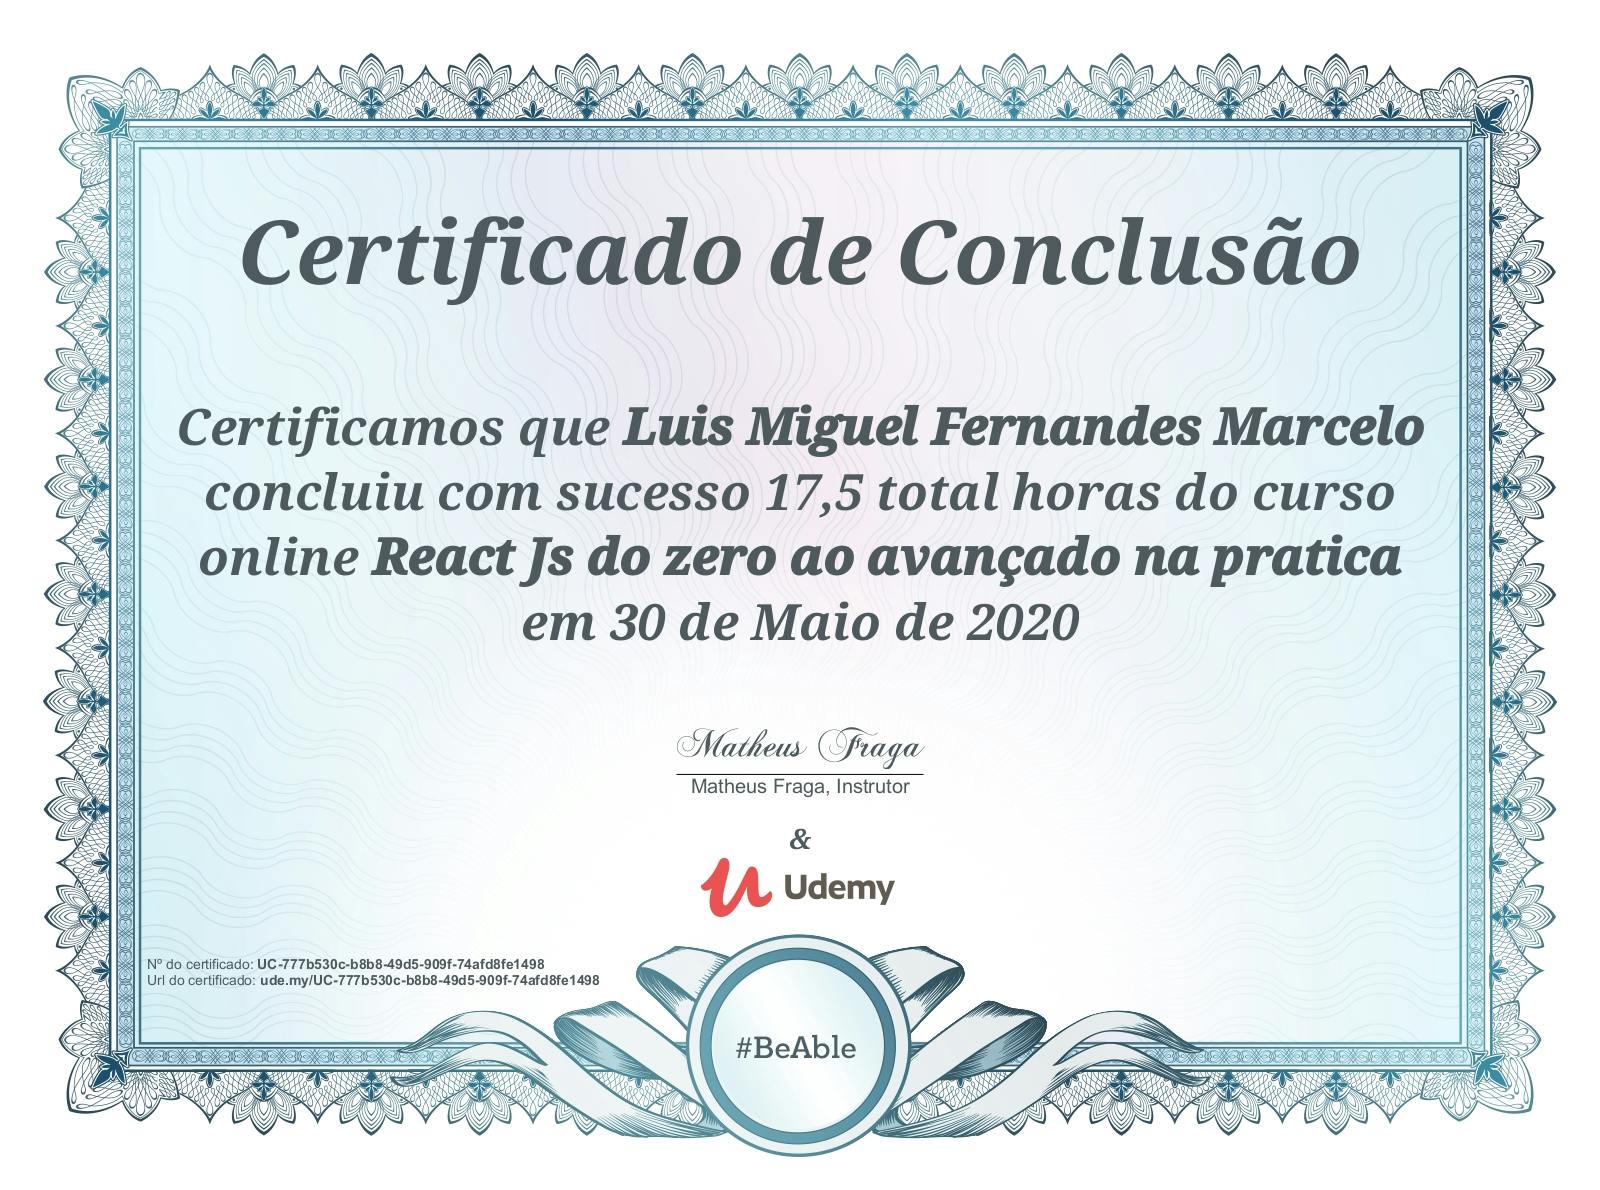 Certificado de conclusão do curso "ReactJS do zero ao avançado na prática".